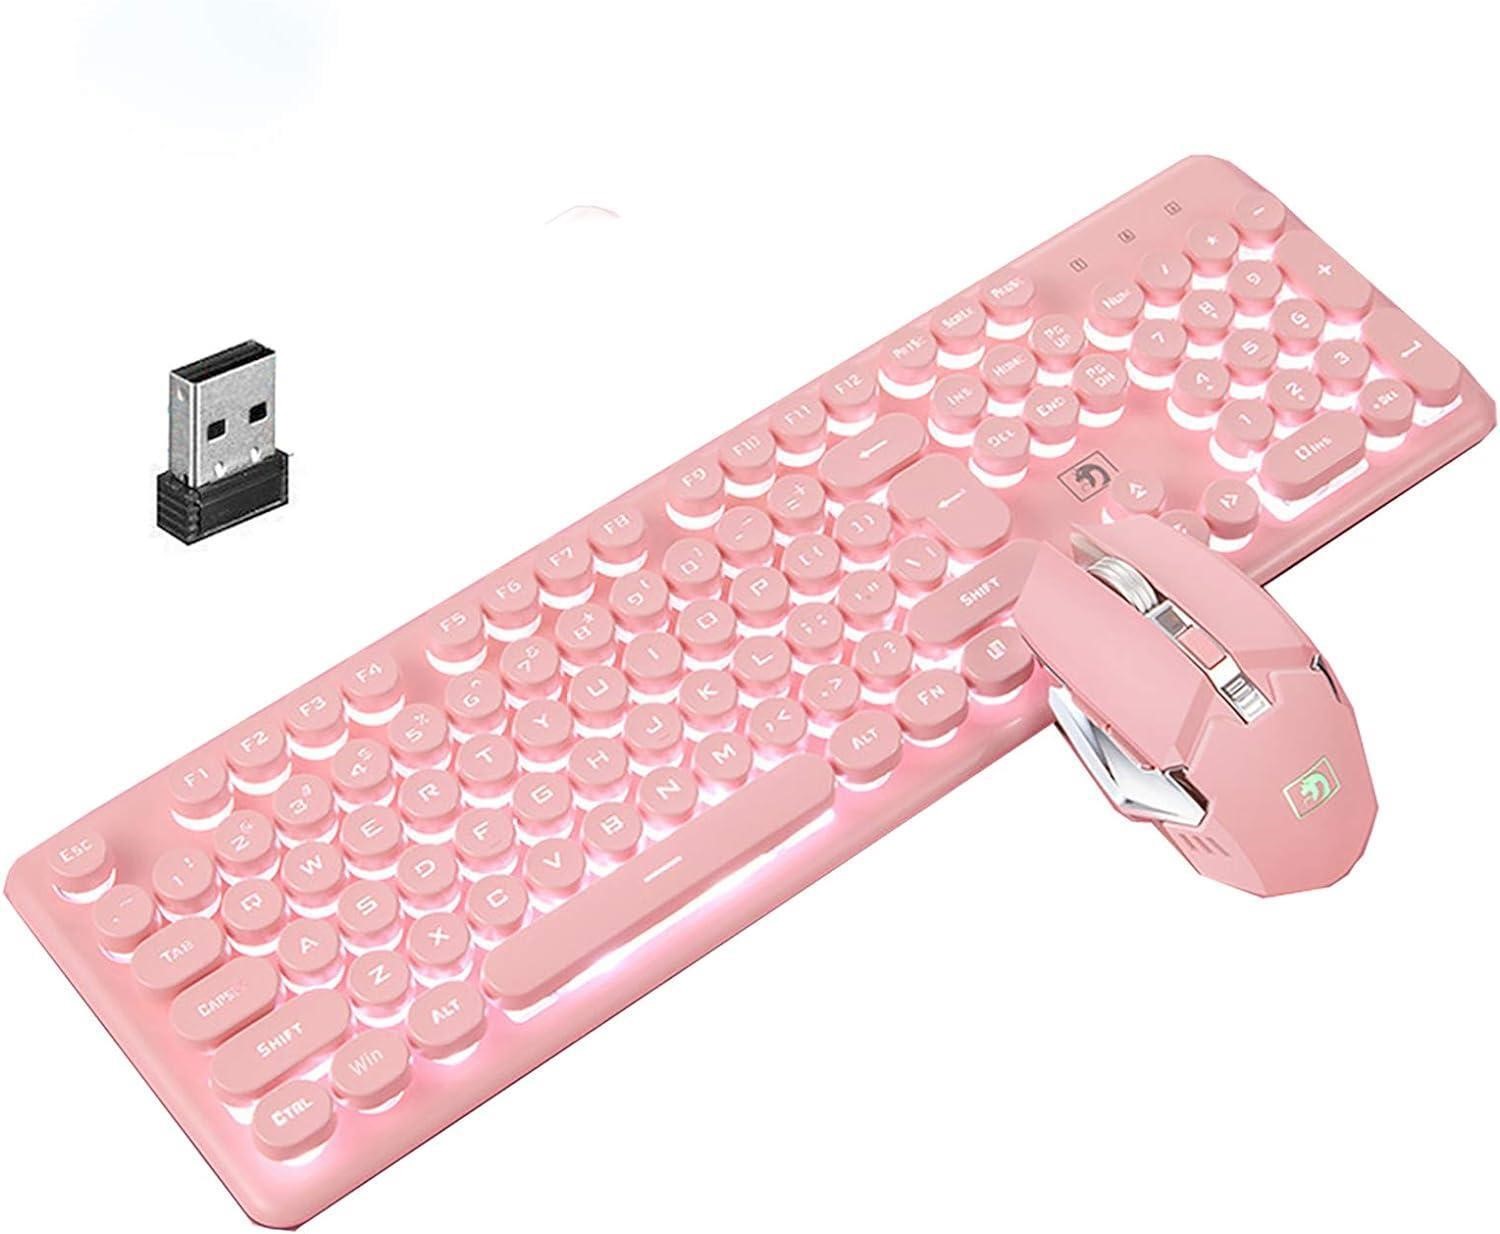 Soke-Six Wireless Gaming Keyboard+Mouse